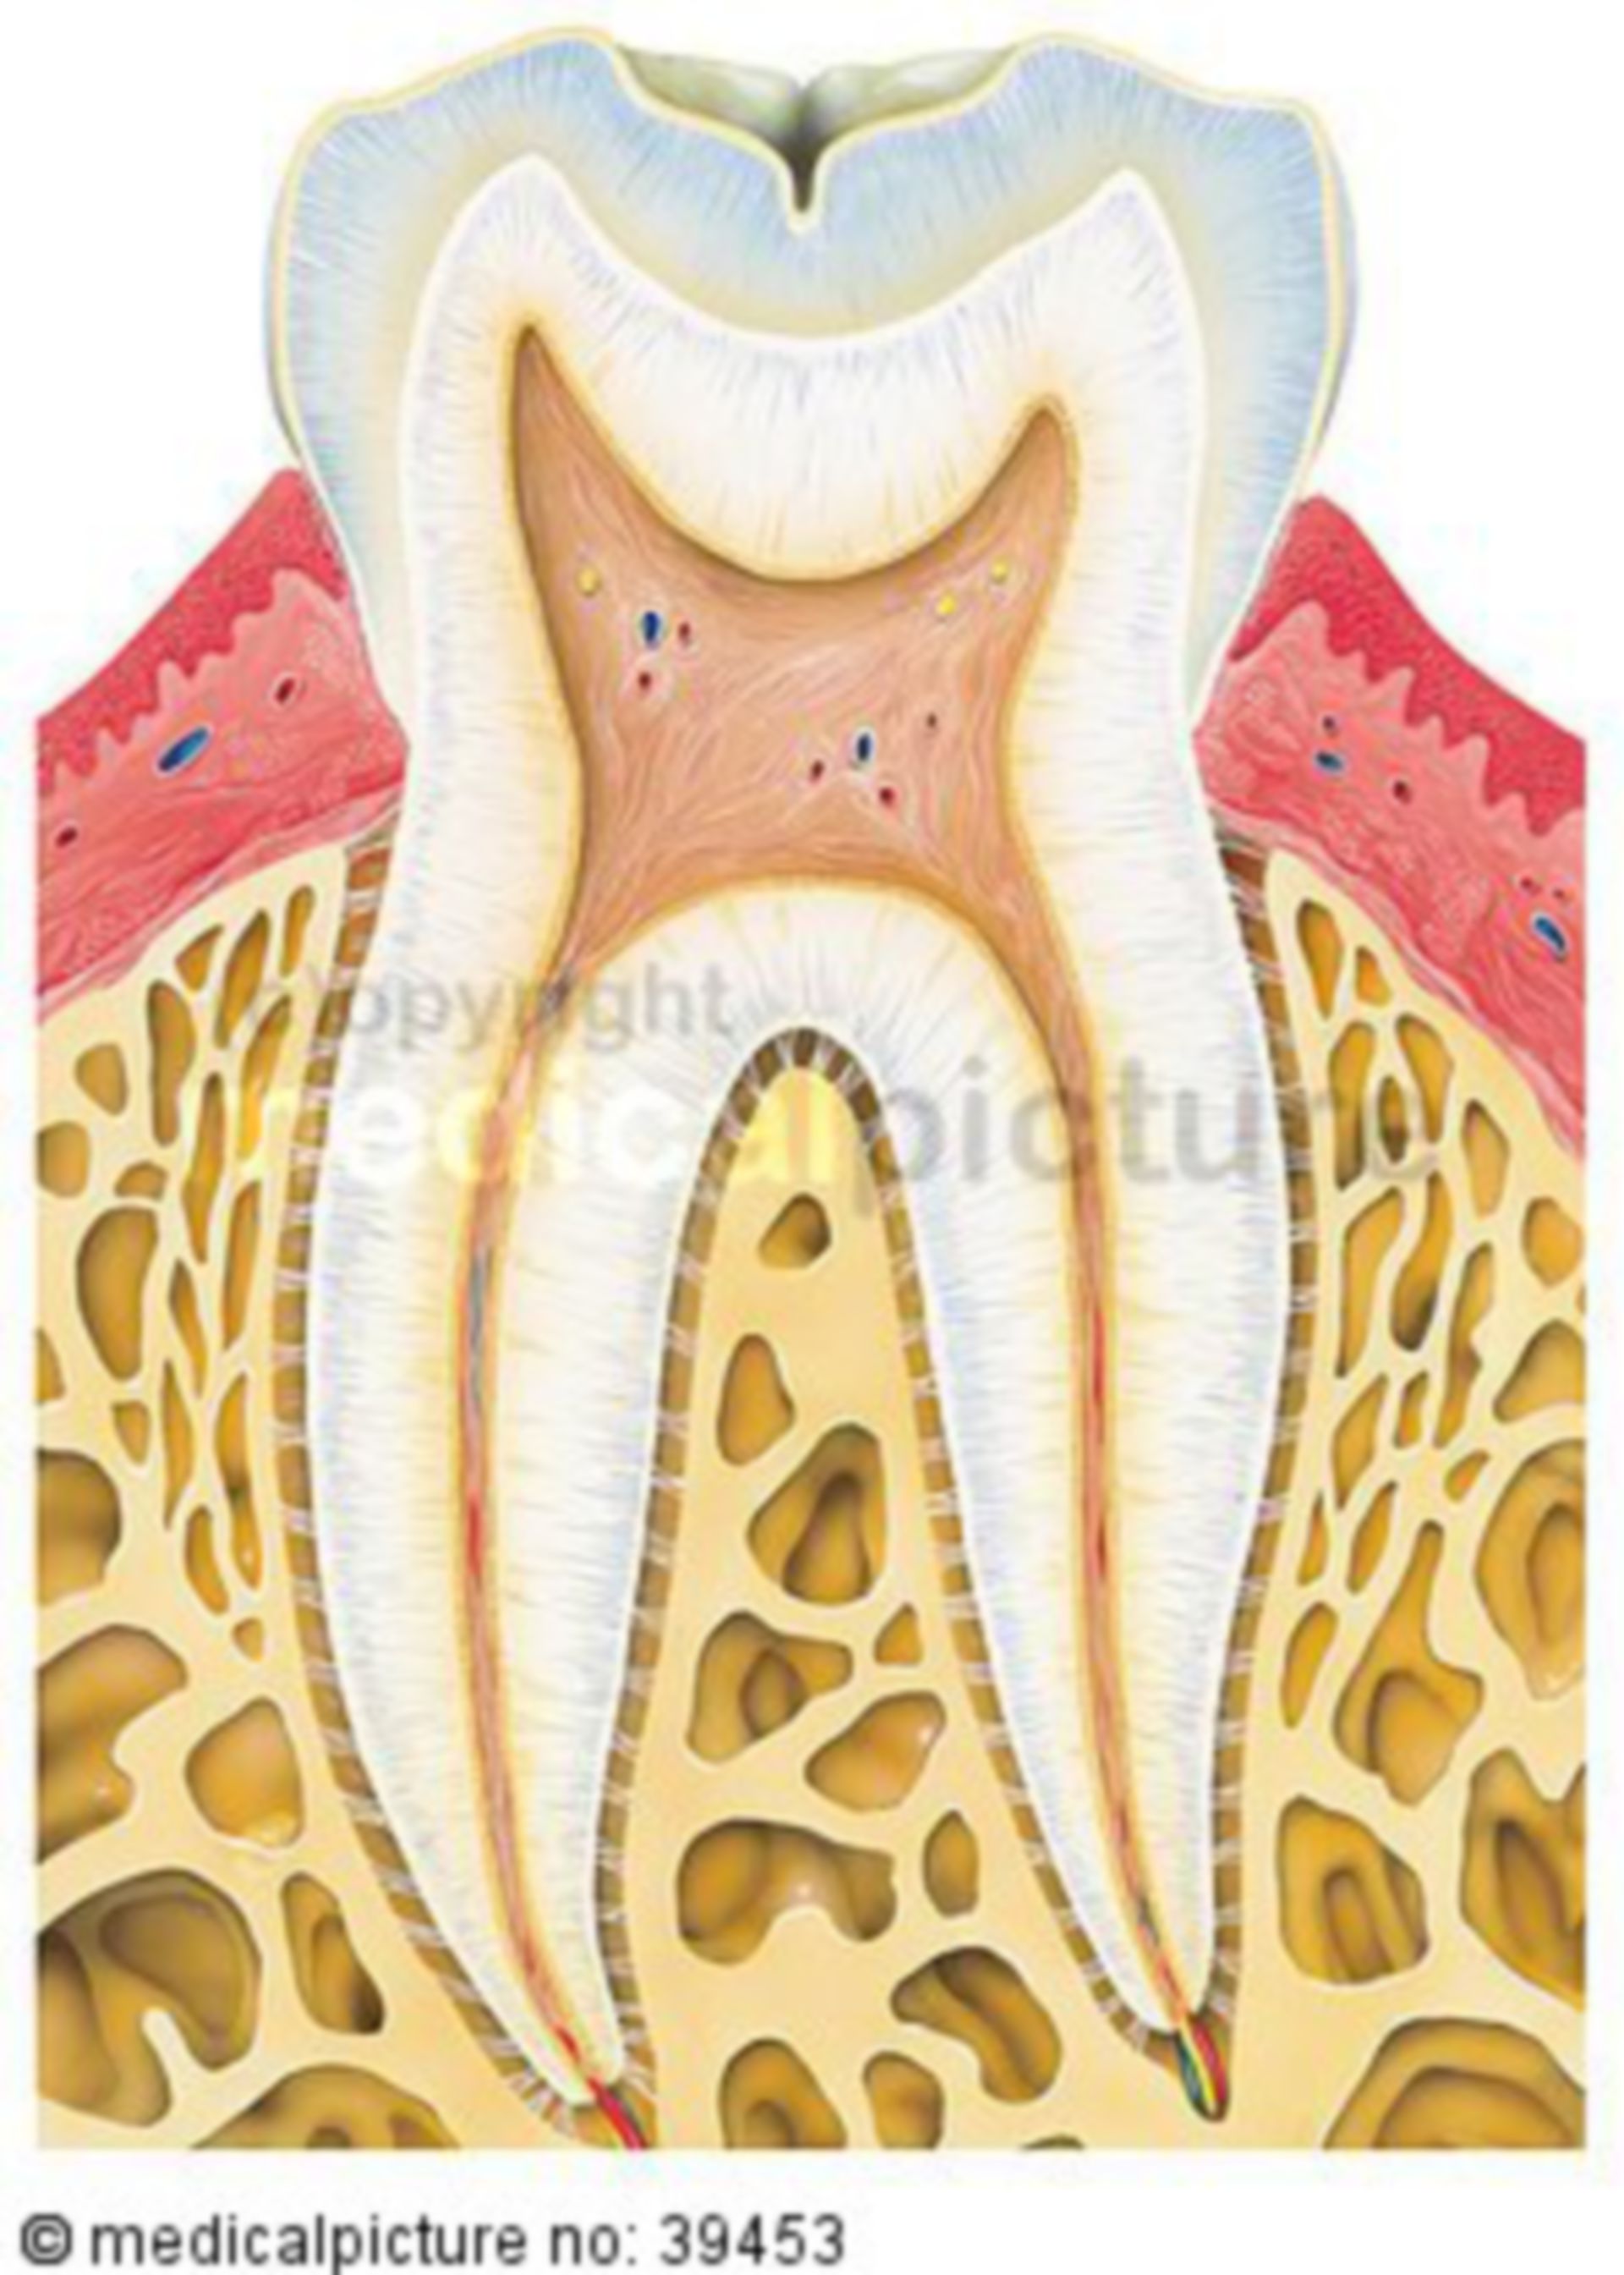  Gesunder Zahn im Querschnitt 
